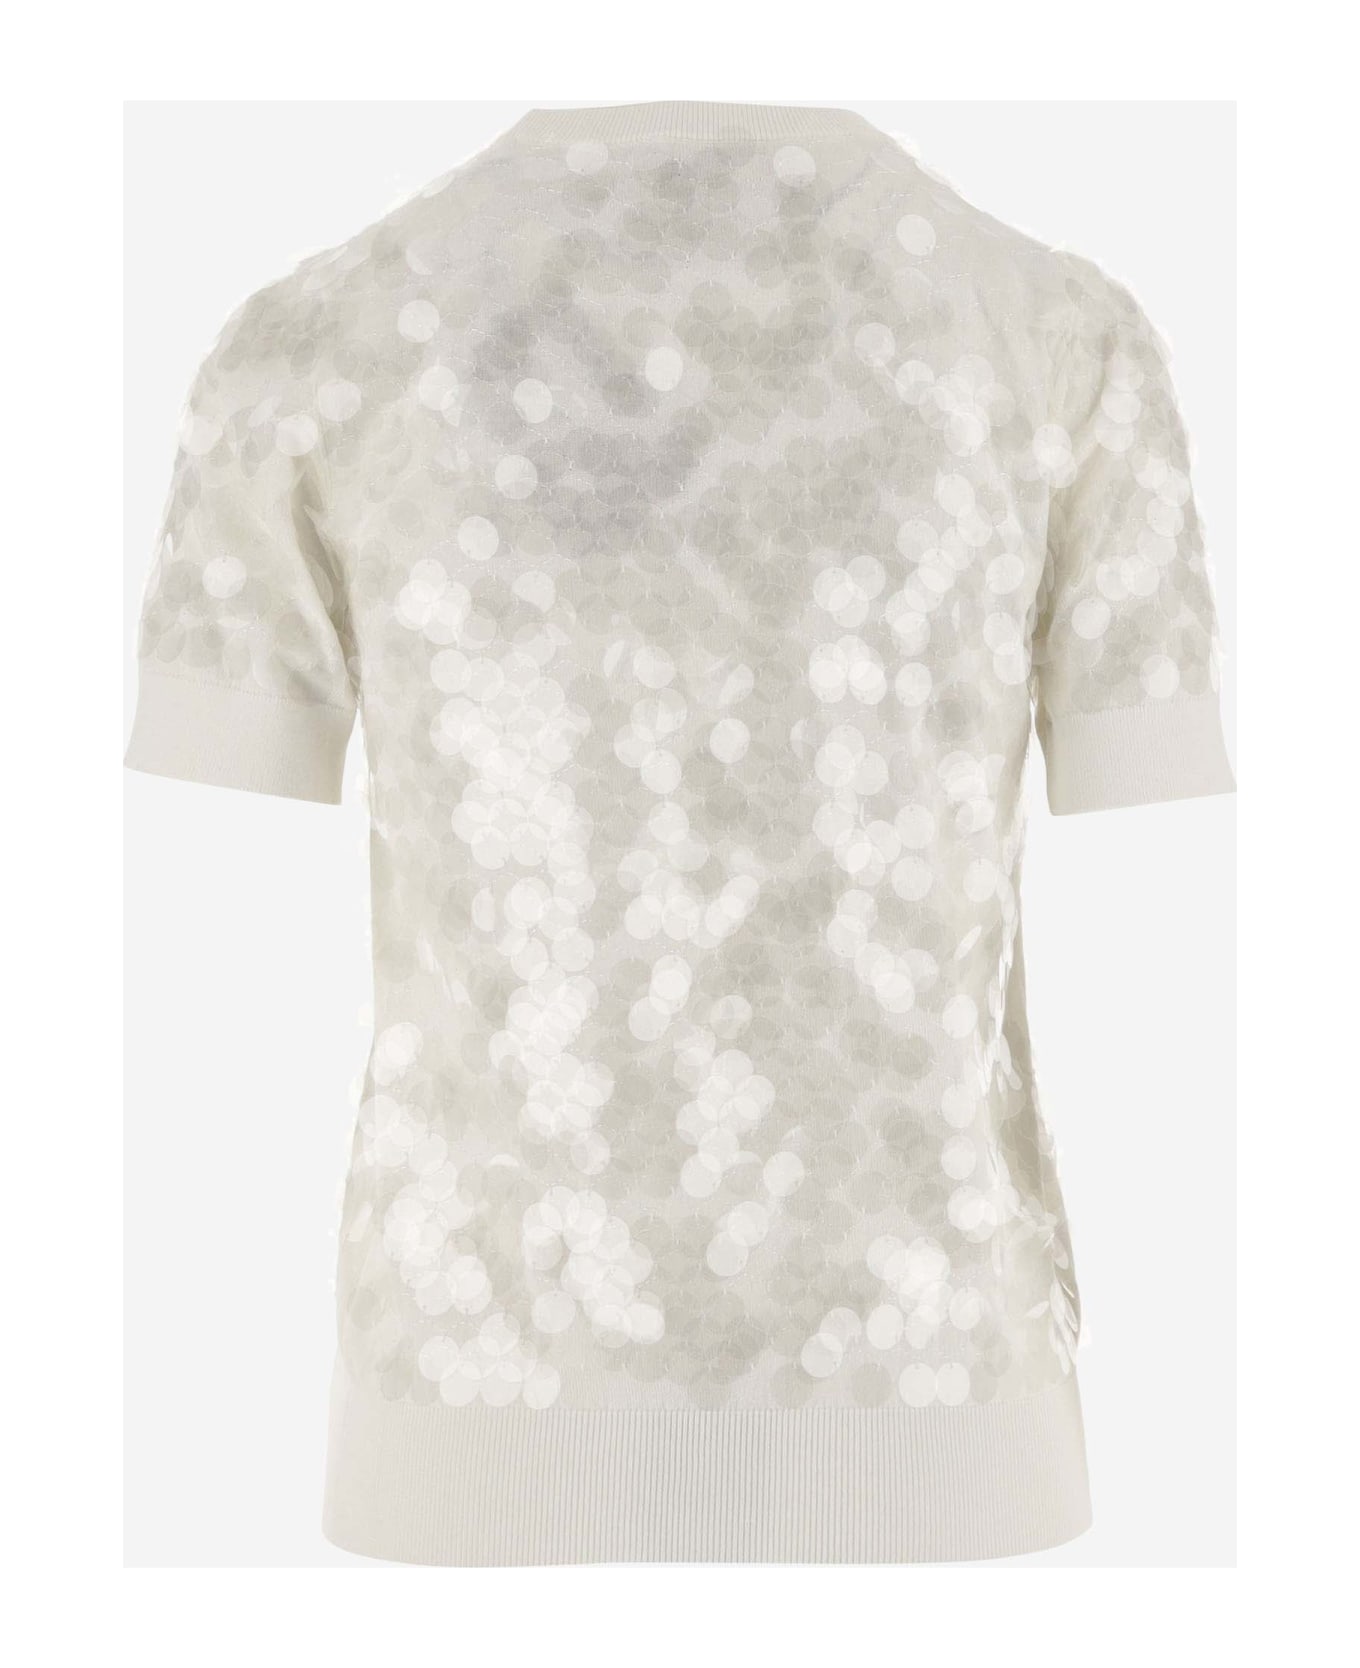 N.21 Cotton T-shirt With Paillettes - BIANCO LATTE